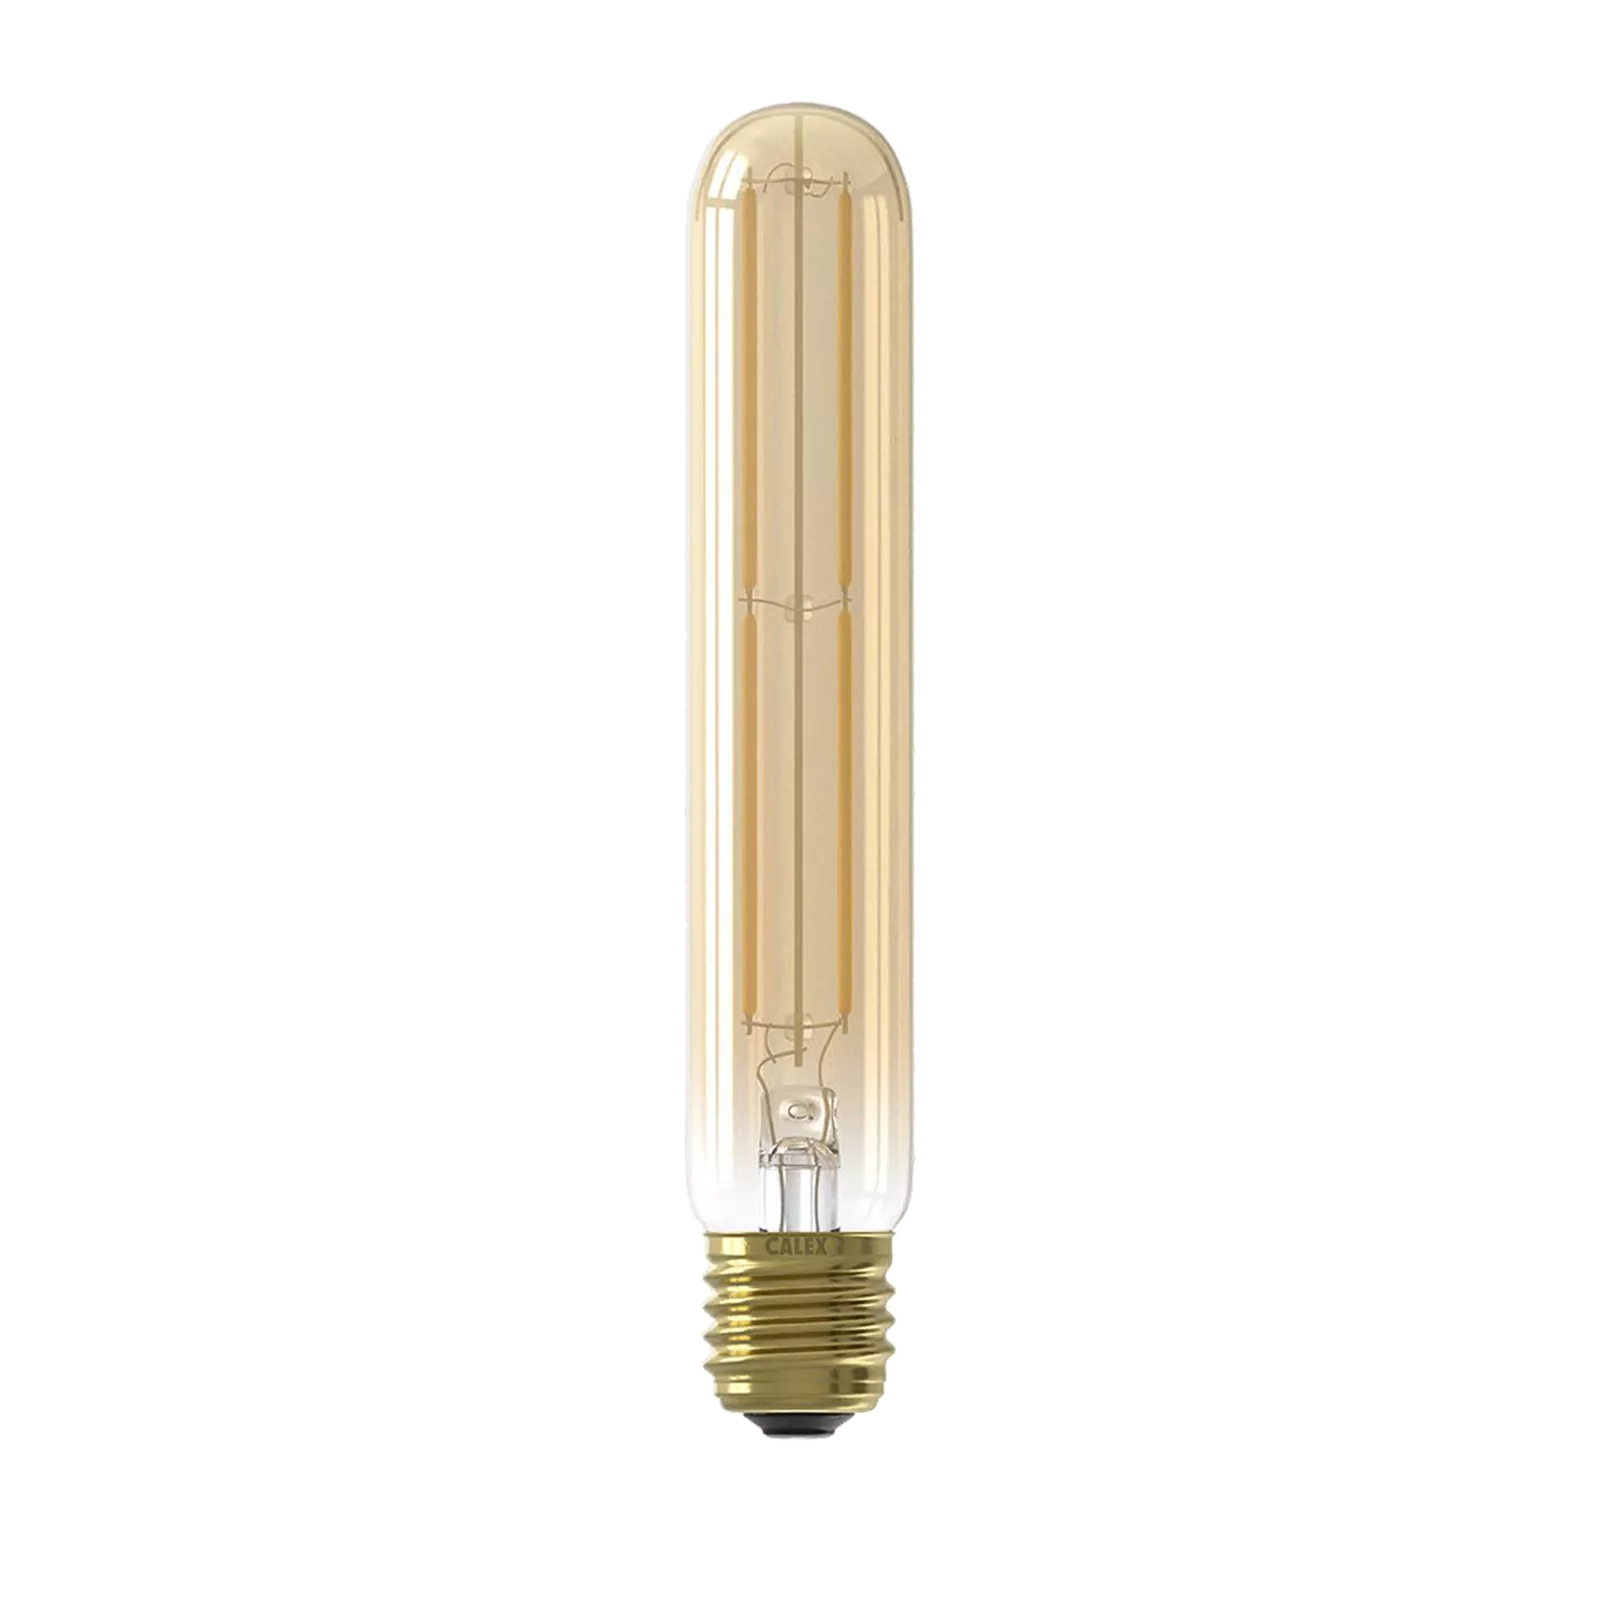 LED lamp (190mm) Tubular - Gold